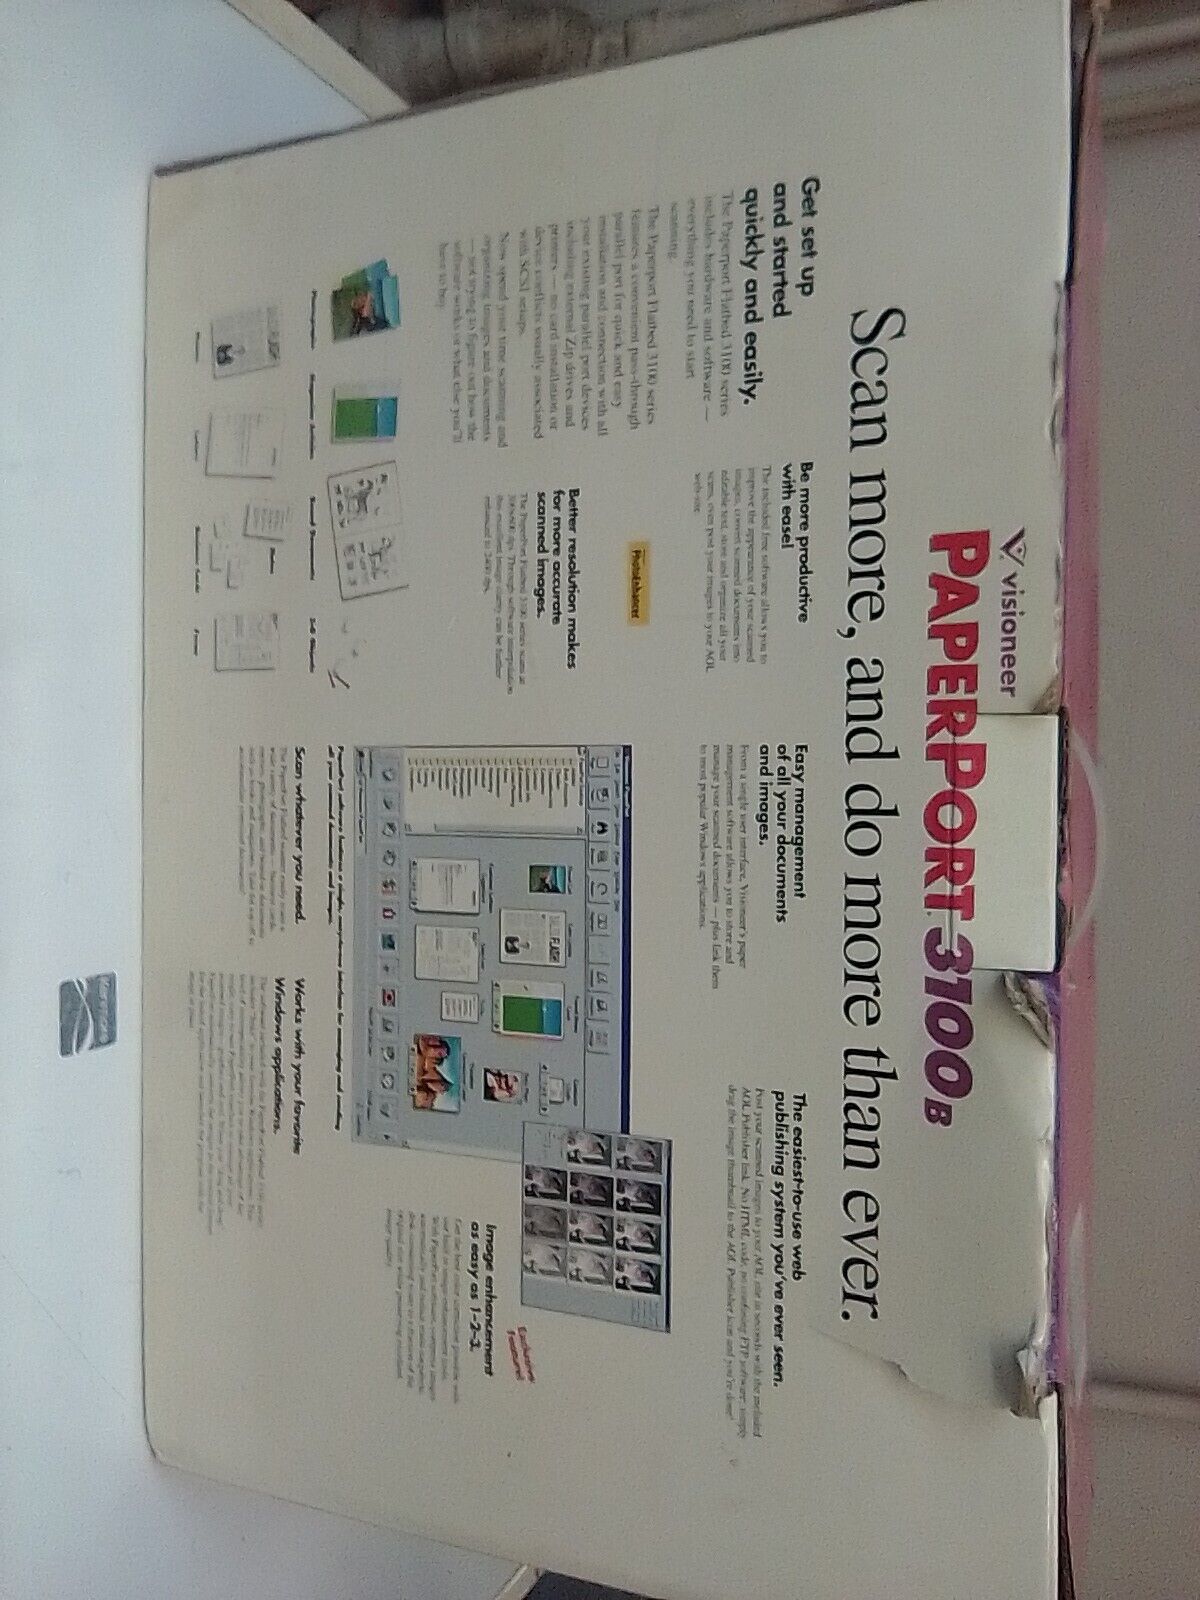 Visioneer Paperport Desktop Color Flatbed Parallel Scanner 3100B NEW SEALED NOS